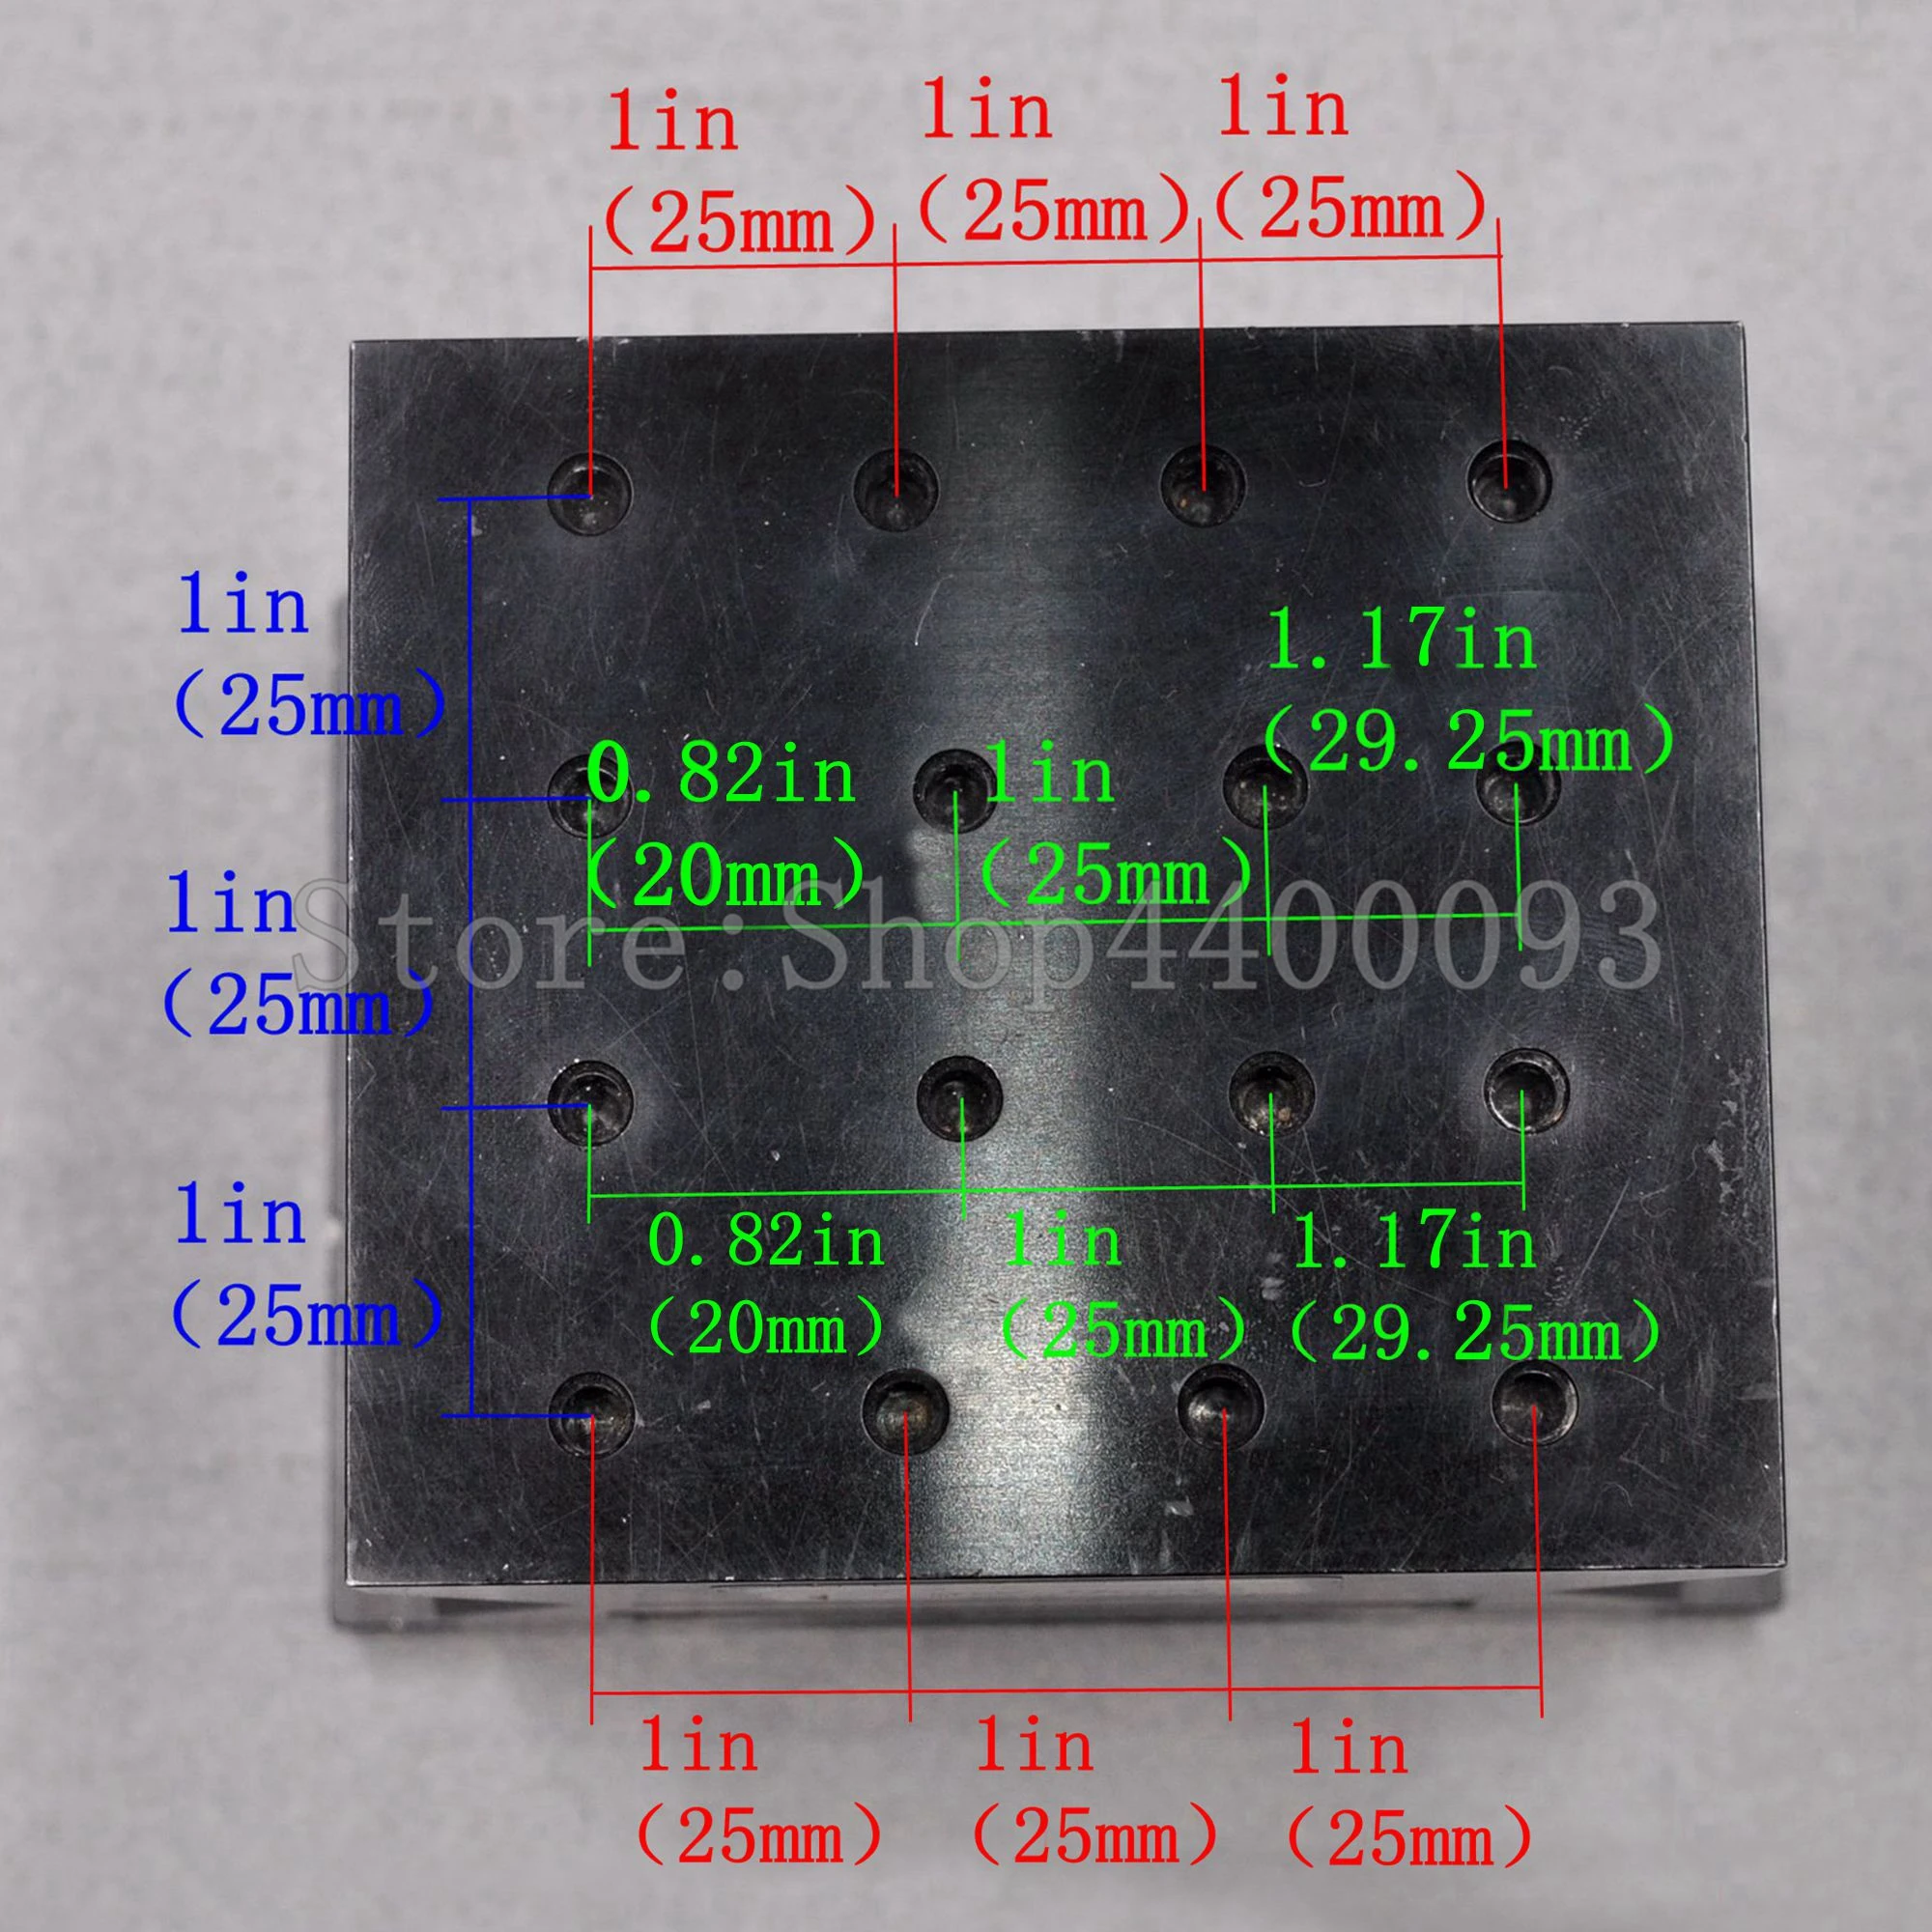 Newport SDL3347 MPMV10148m оптическая ось X одномерная ручная электрическая высокоточная направляющая перемещения